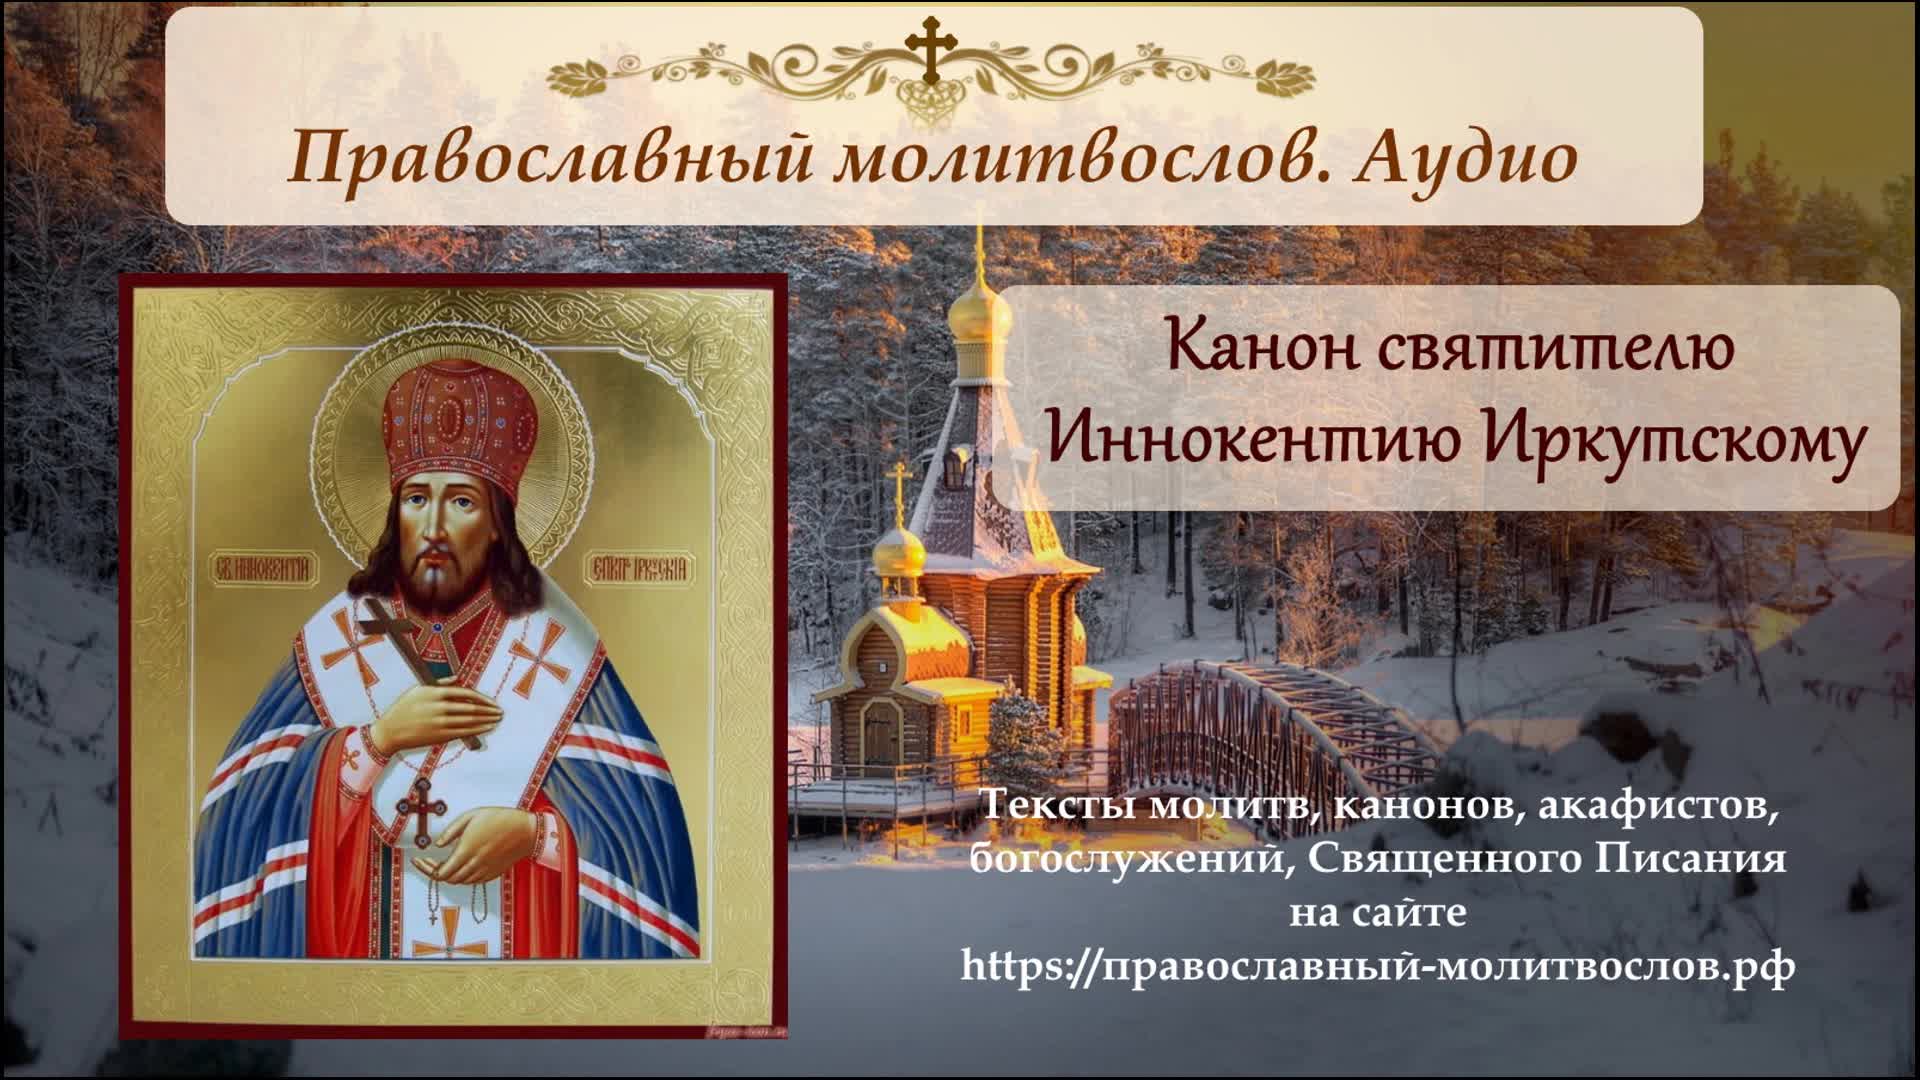 Канон святому николаю. Икона святителя Иннокентия епископа Иркутского.